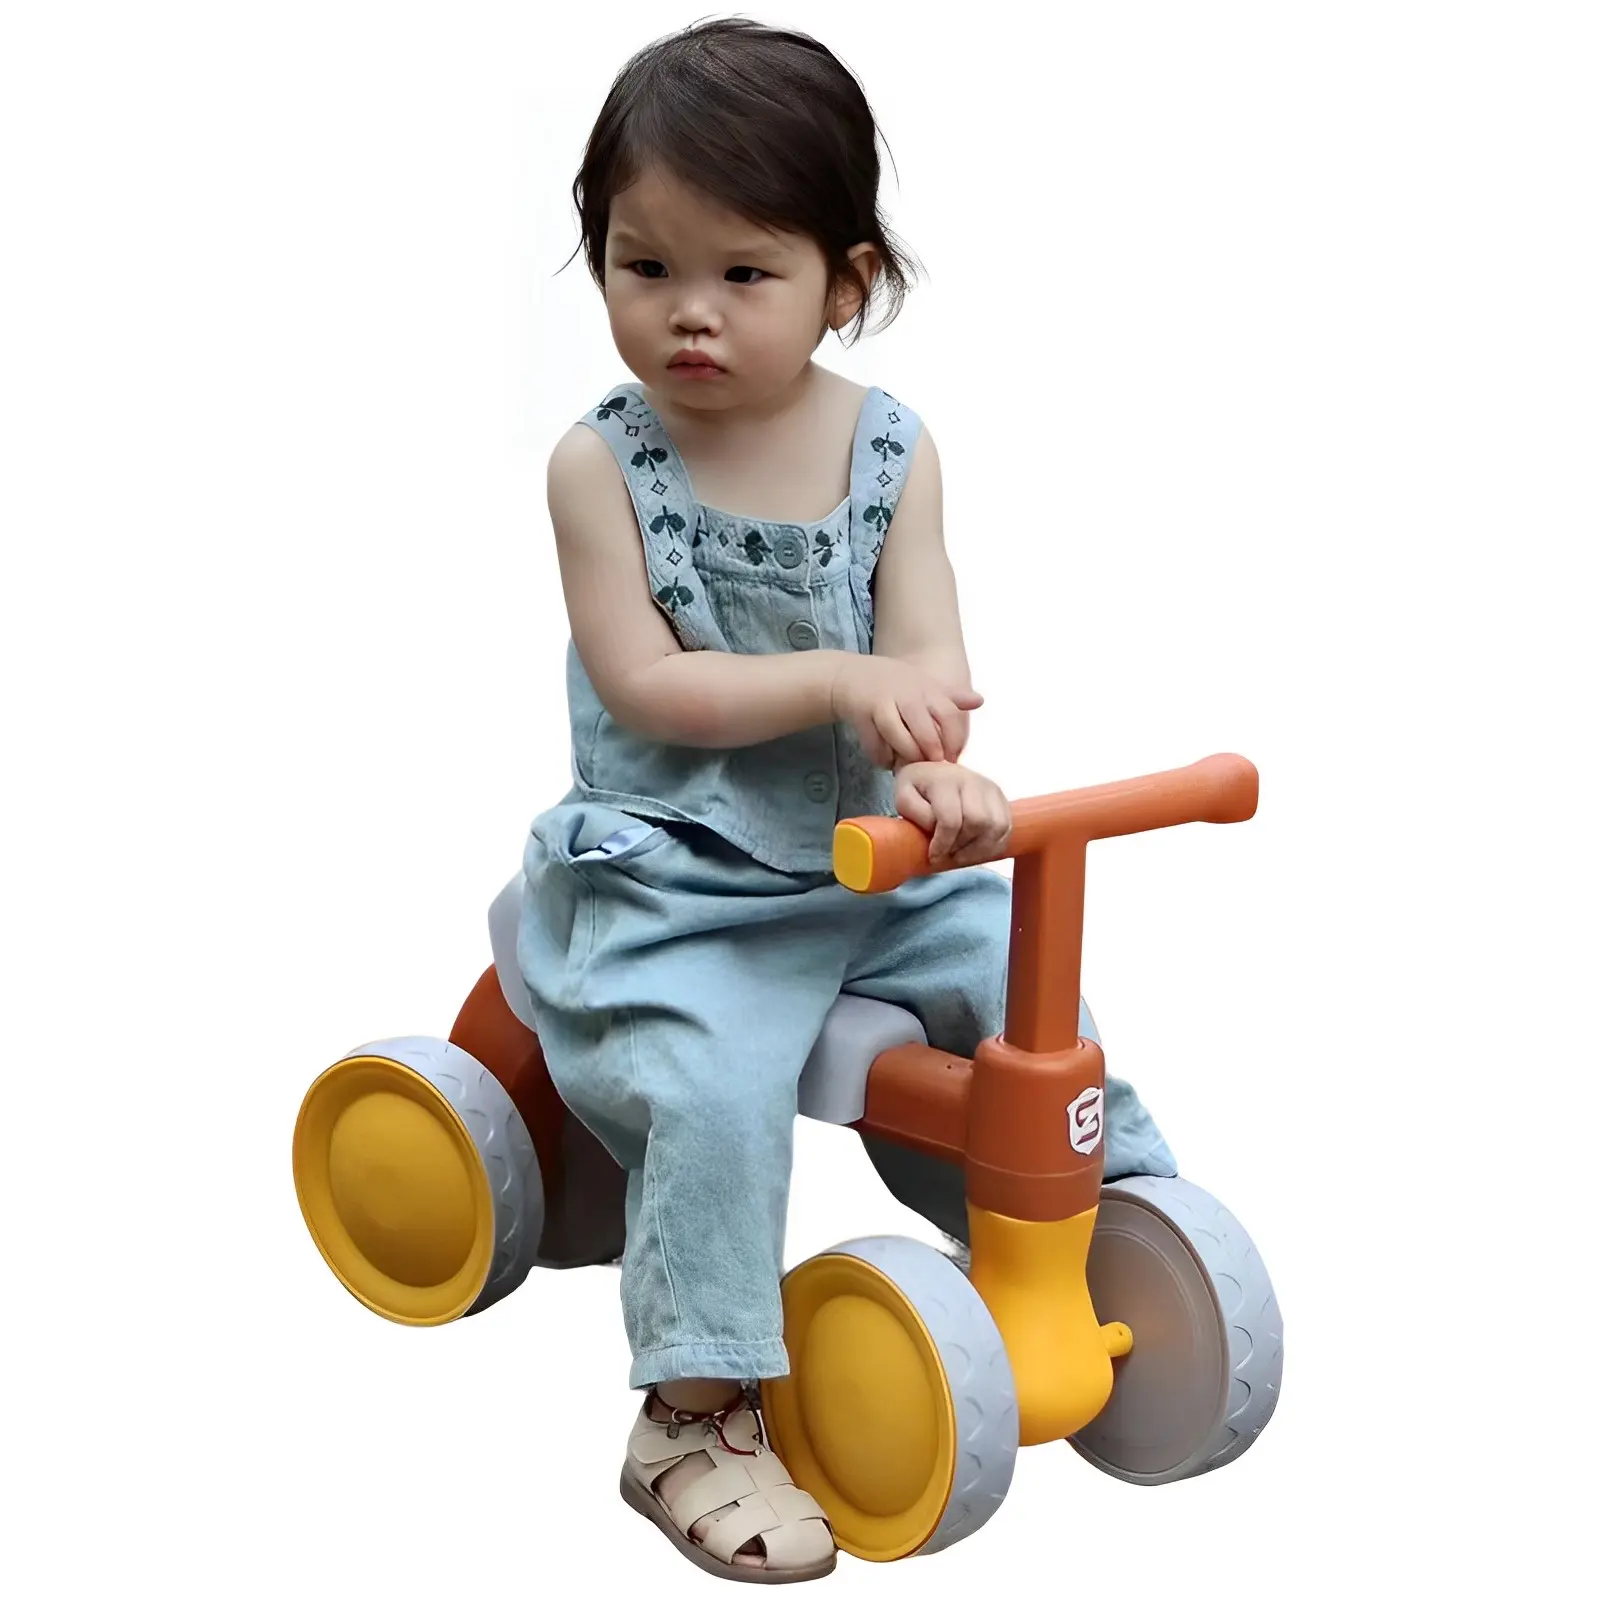 Ucuz fiyat toptan yeni mini araba binmek büküm araba sürgülü araba bebek küçük çocuk erkek kız için